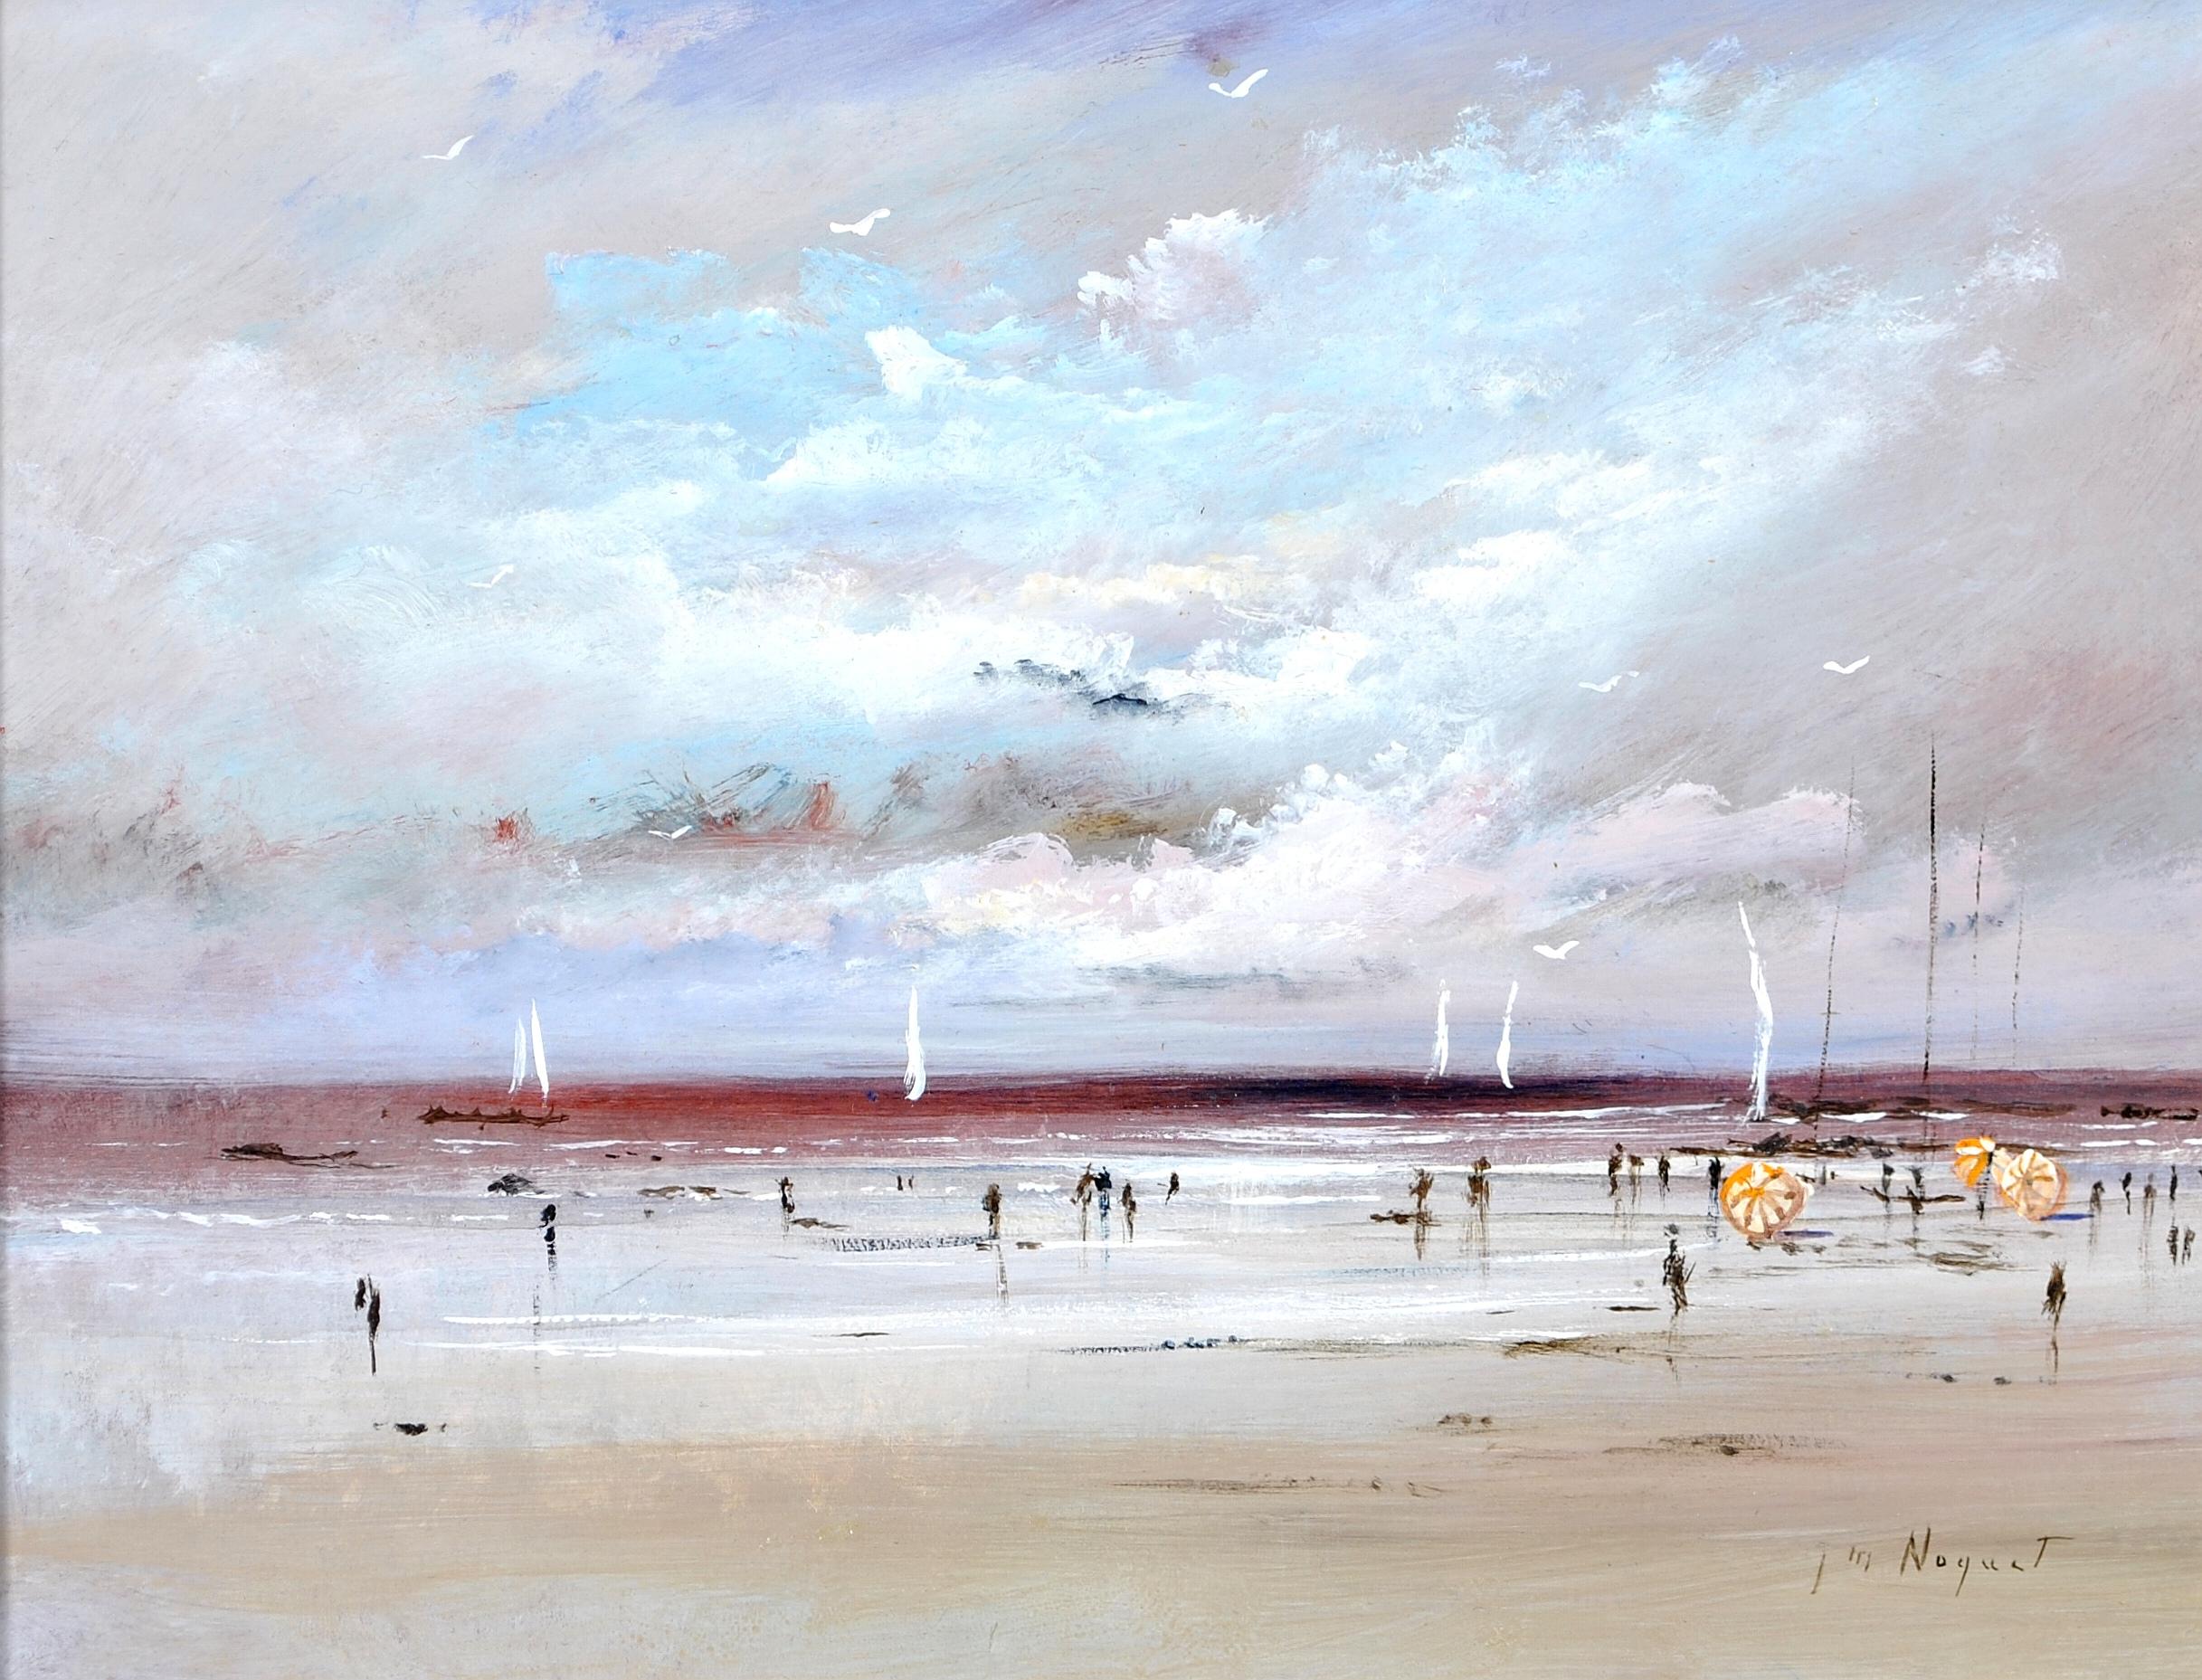 Figures sur la plage - Peinture impressionniste française du milieu du 20e siècle - Painting de J. Nocquet